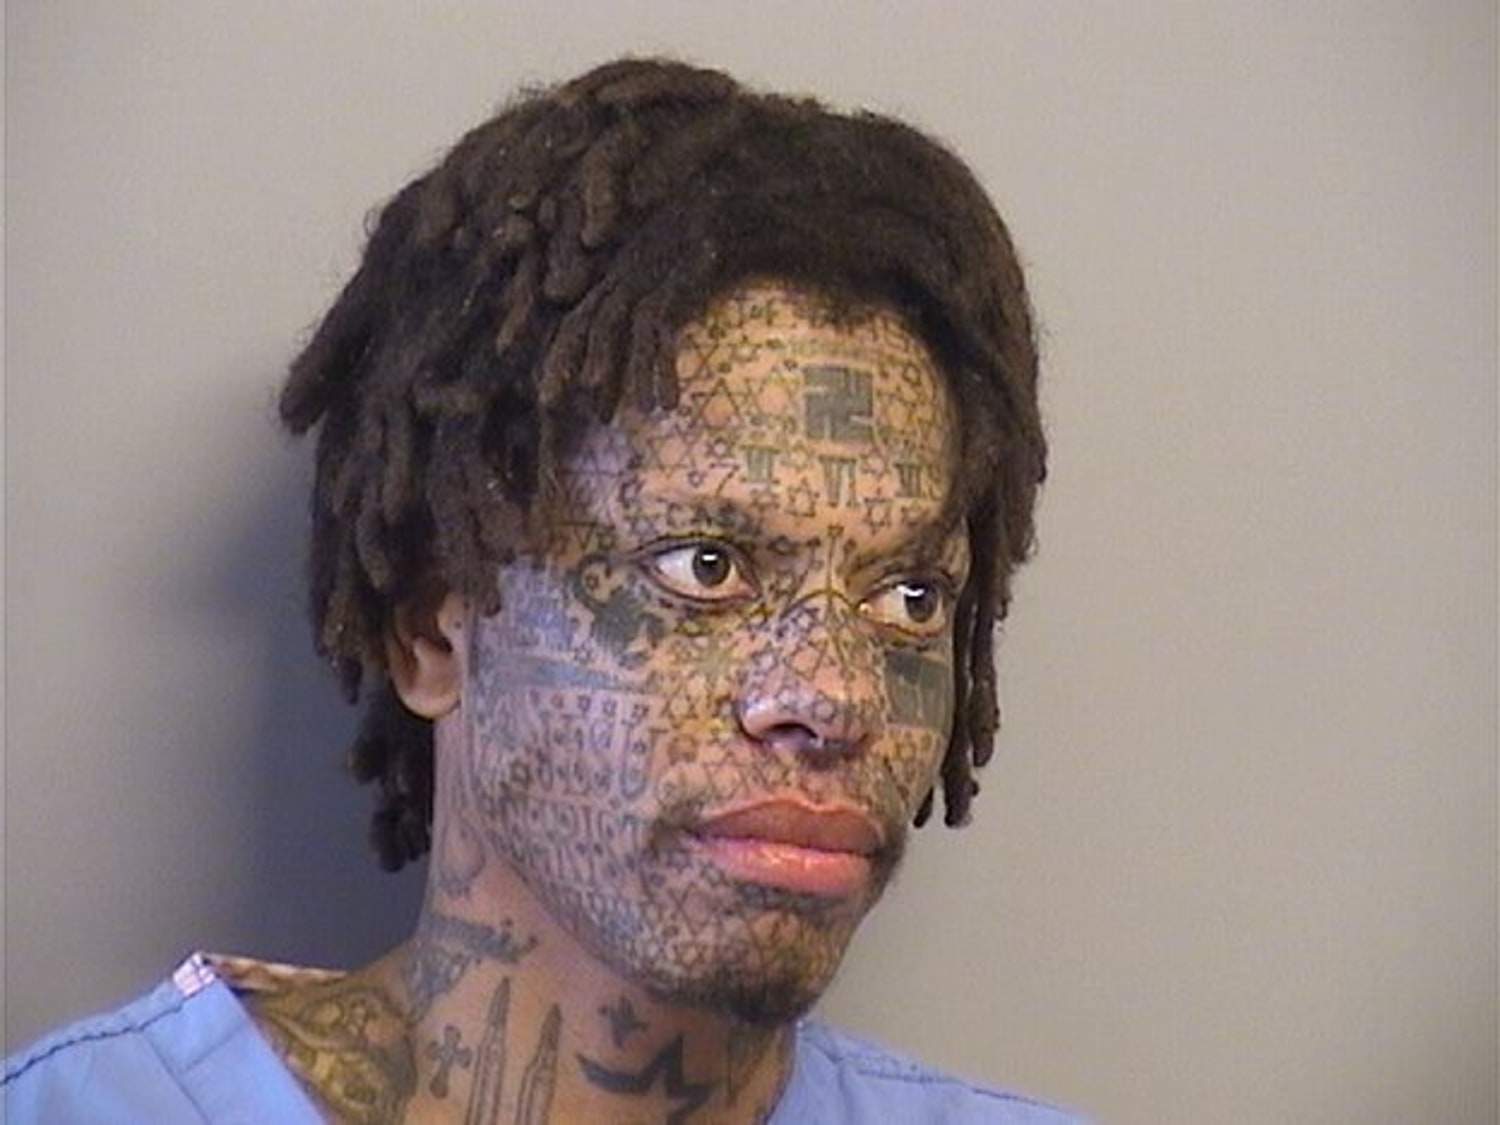 Costumed, Tattooed Man Arrested over Oklahoma Store Disturbance